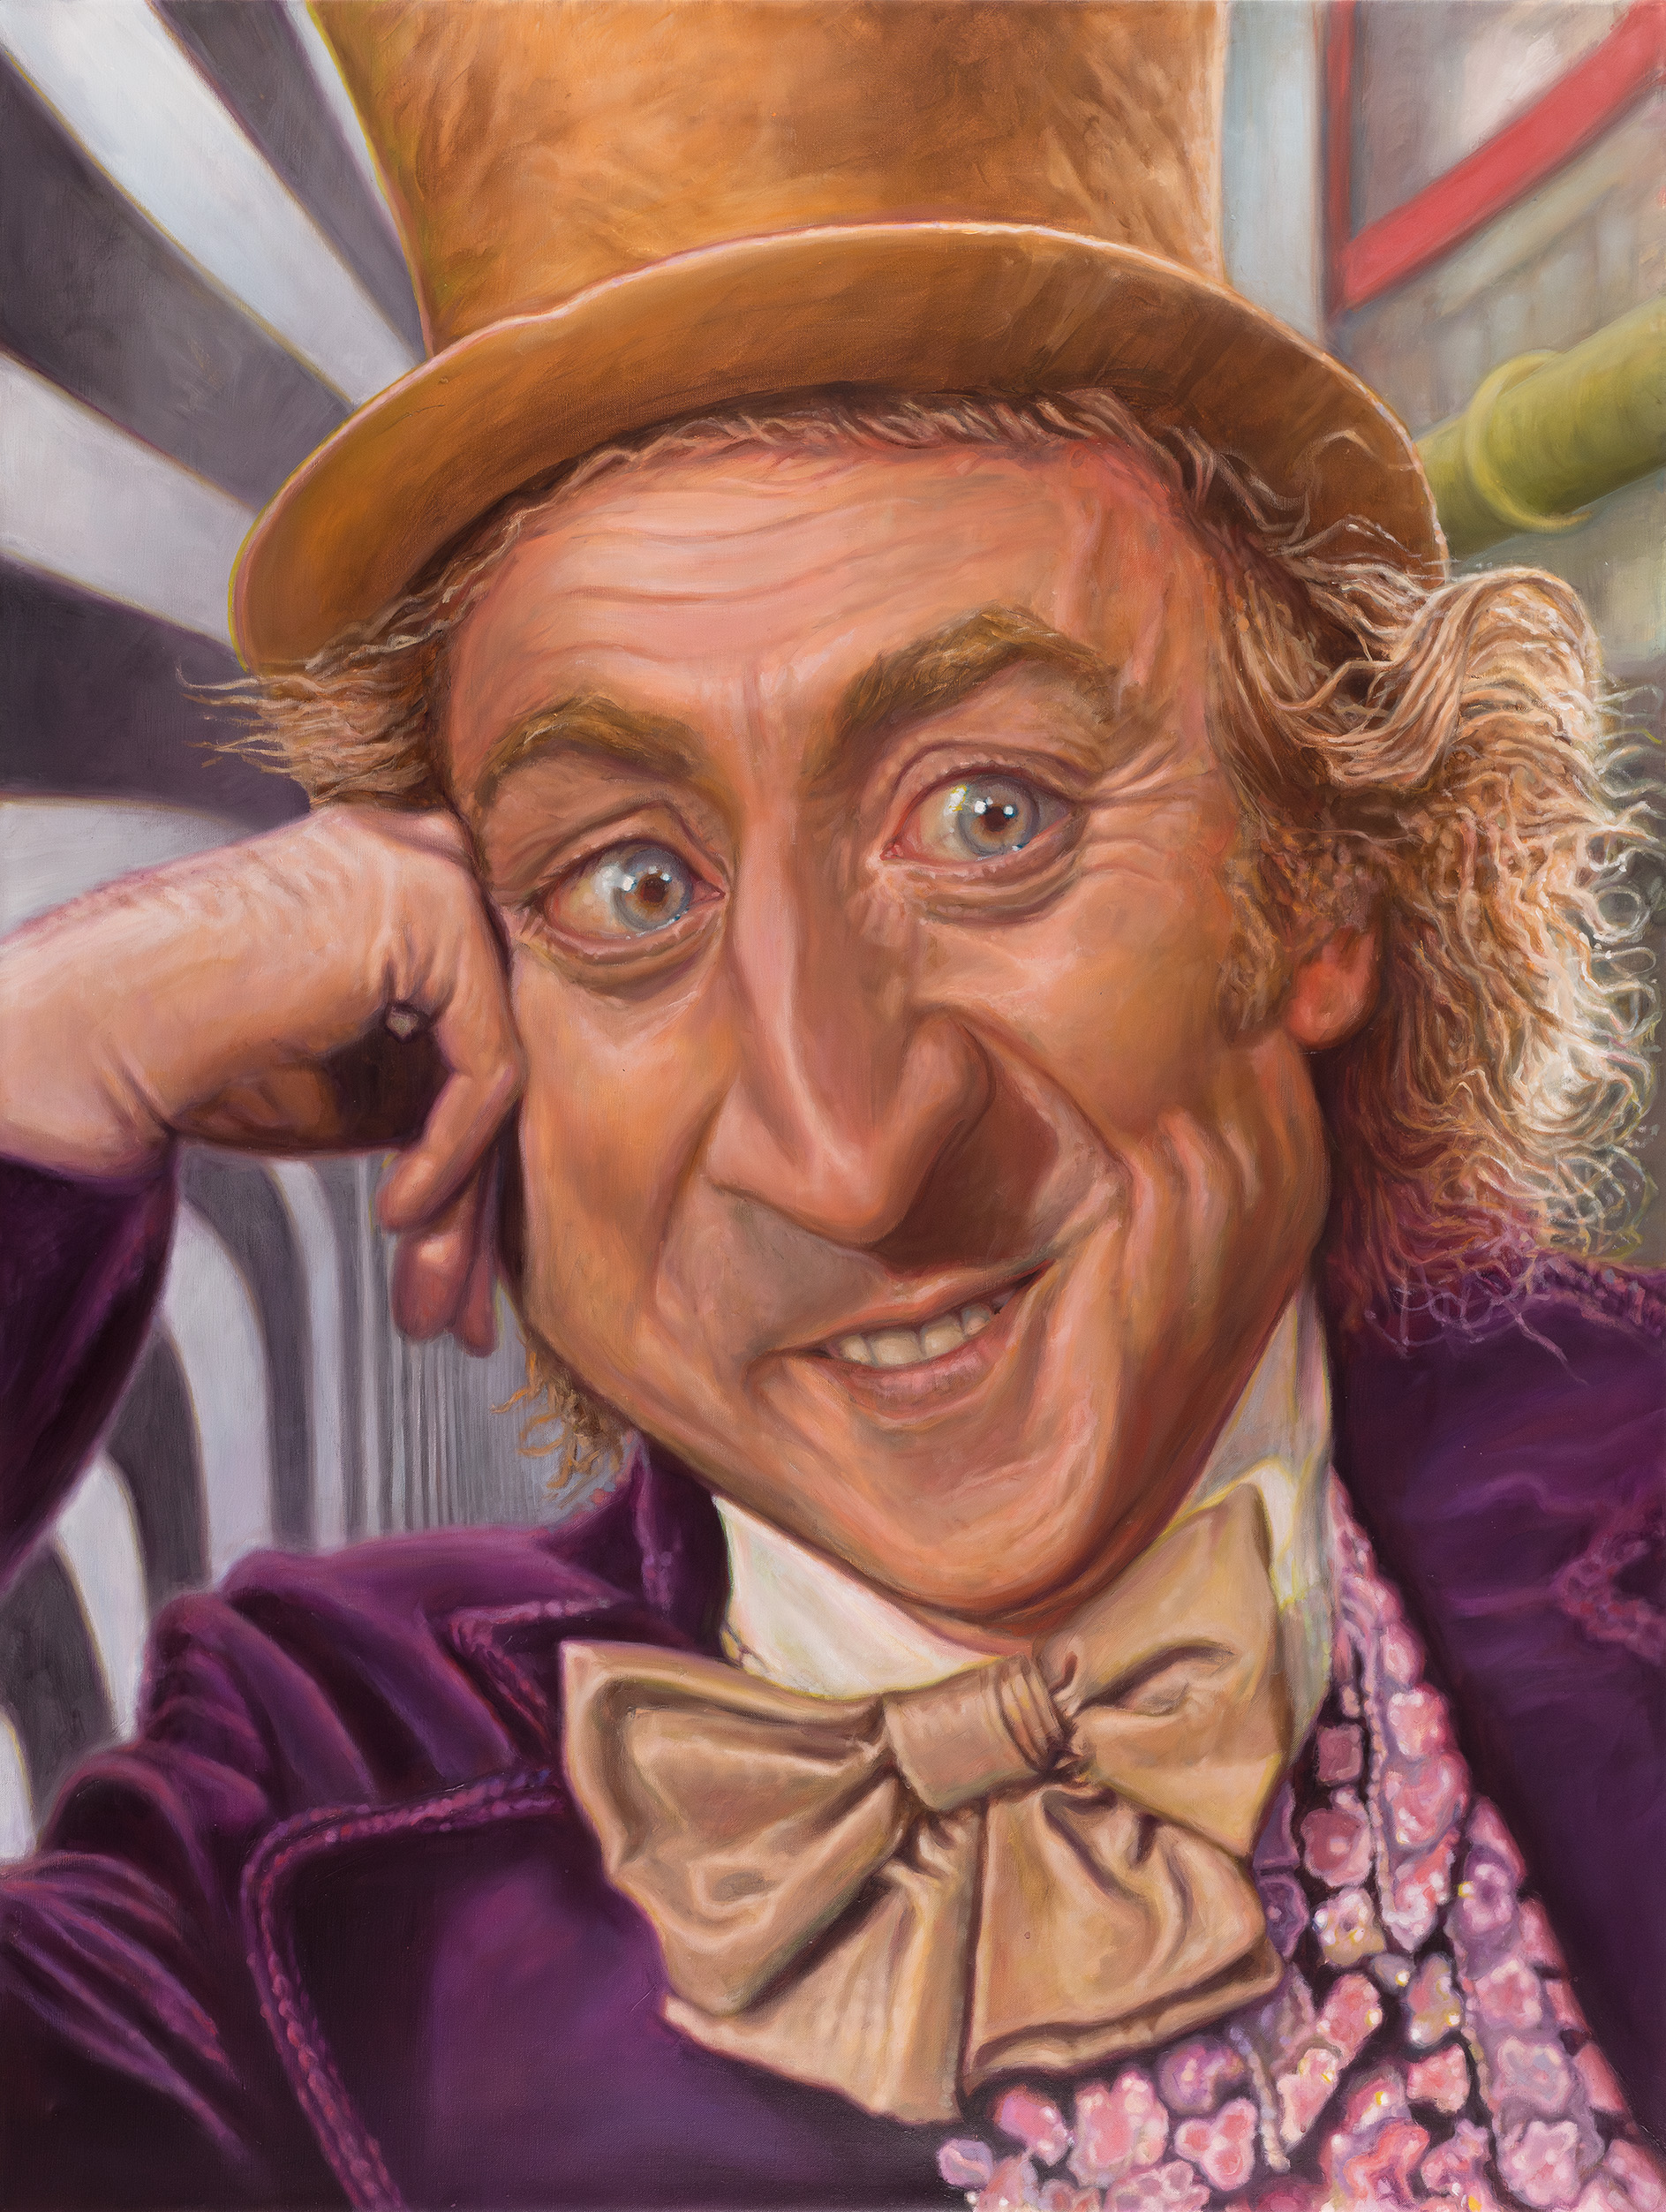 Gene Wilder as Willy Wonka, portrait by Derren Brown